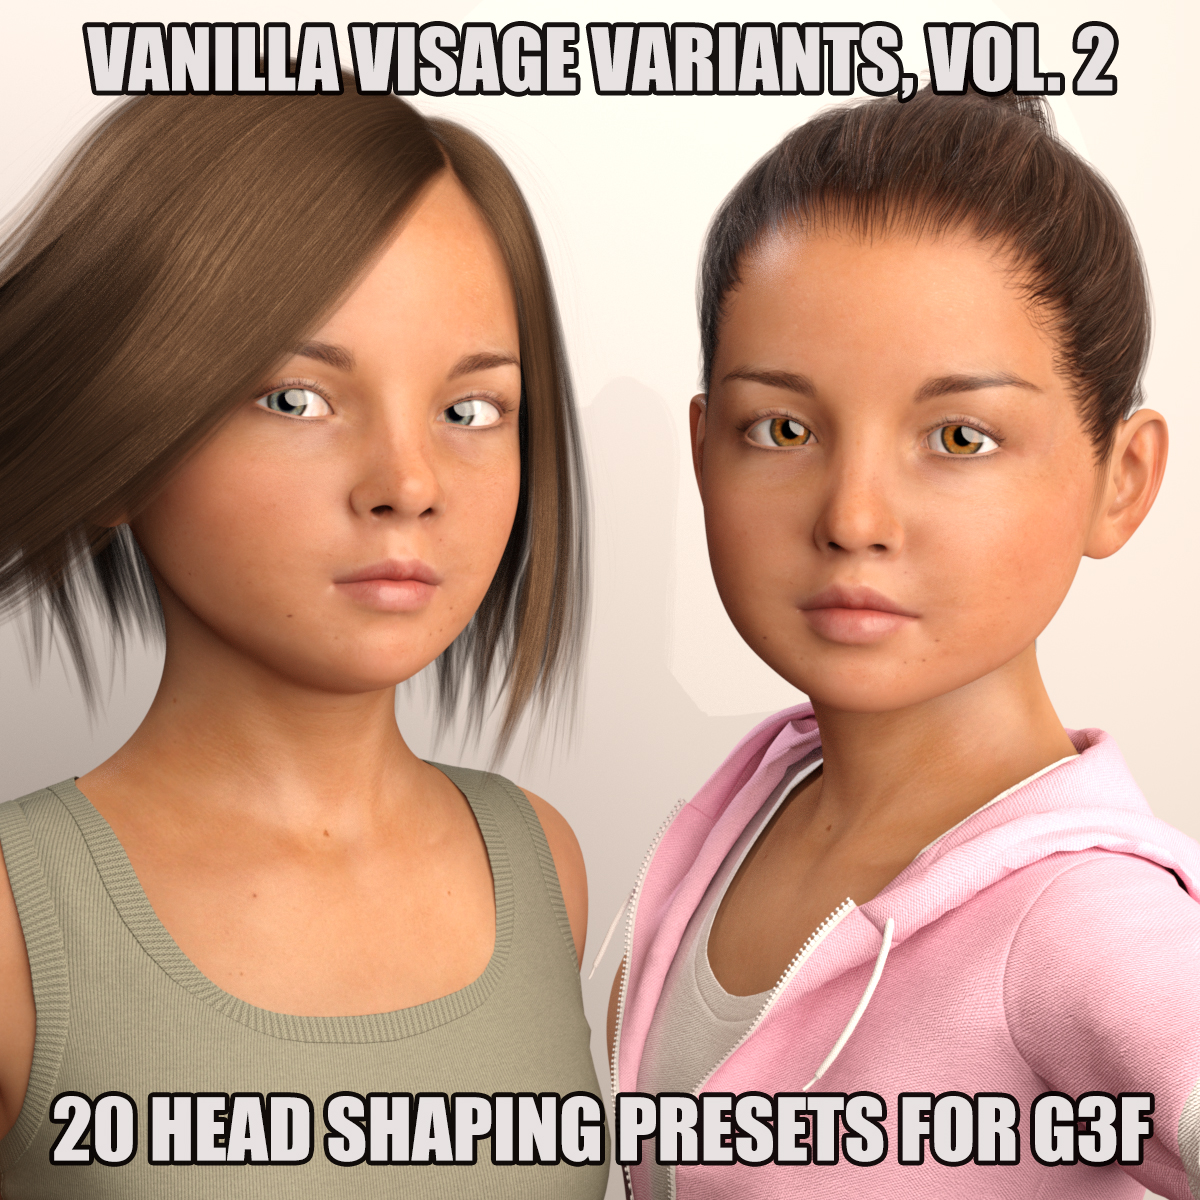 Vanilla Visage Variants, Vol. 2